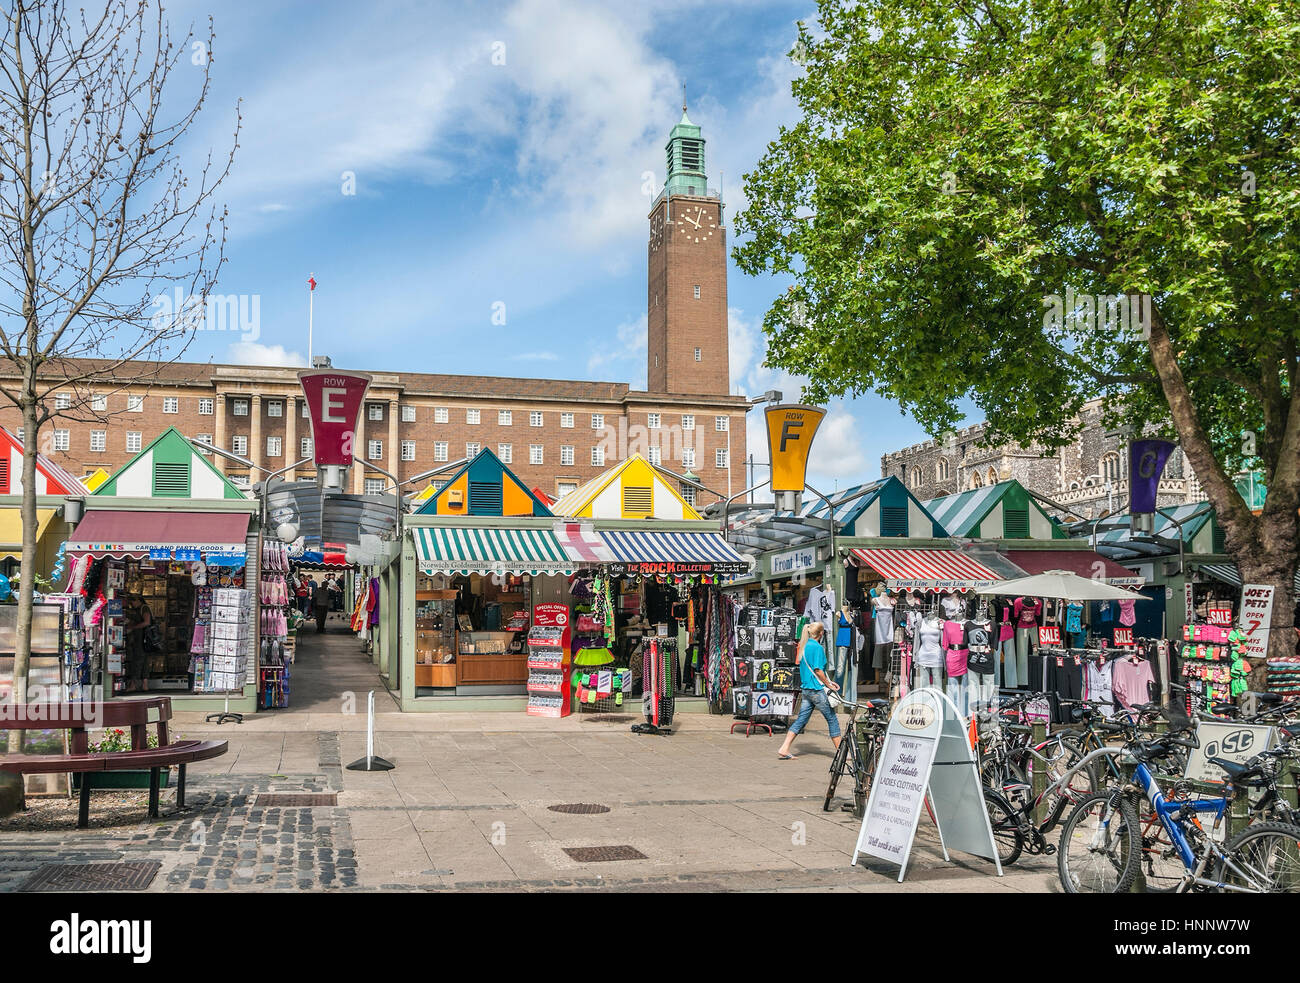 Le marché se bloque sur la place du marché de Norwich avec l'hôtel de ville en arrière-plan, Norfolk, Angleterre, Royaume-Uni. Banque D'Images